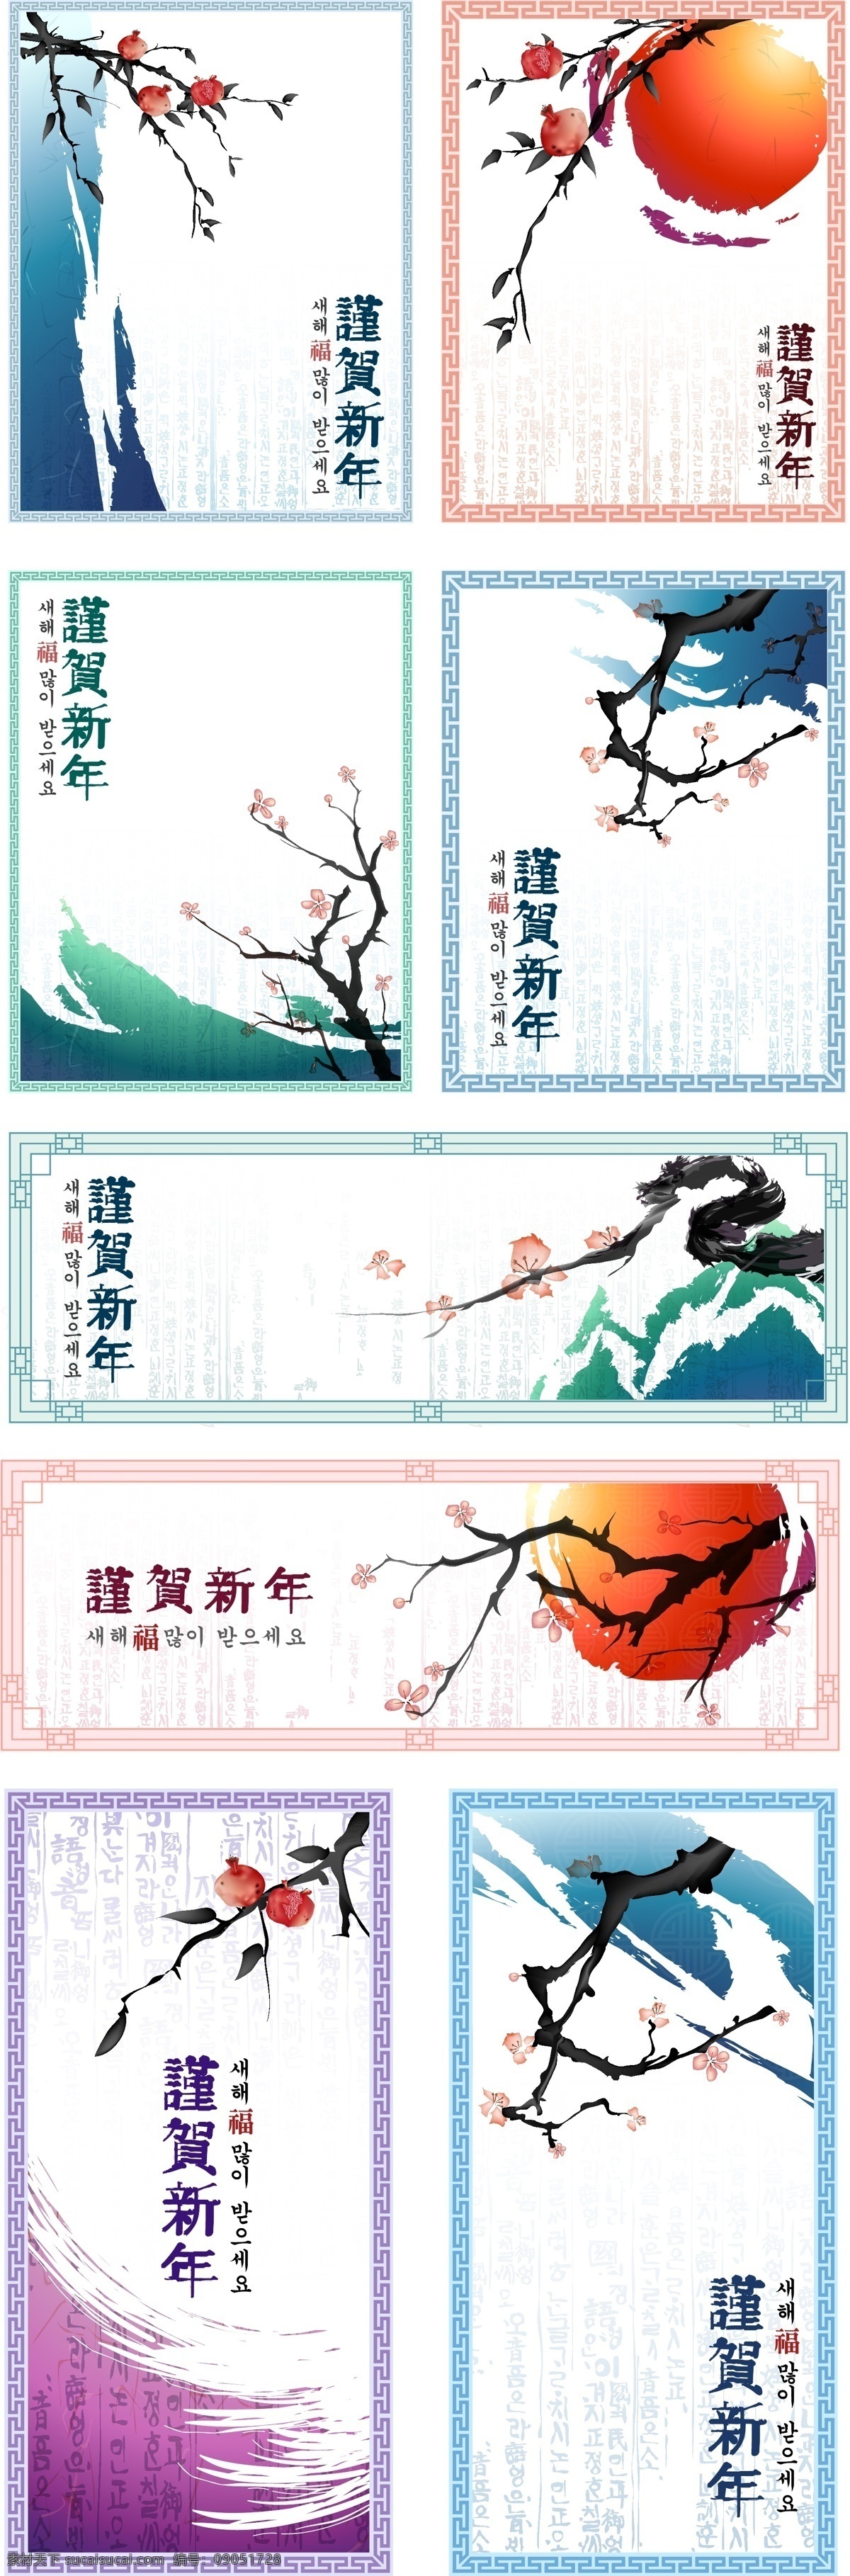 传统 中国 水墨画 风格 矢量 材料 古典 李子 墨迹 桃子 油墨 油漆 经典的花边 新的一年里 矢量油墨